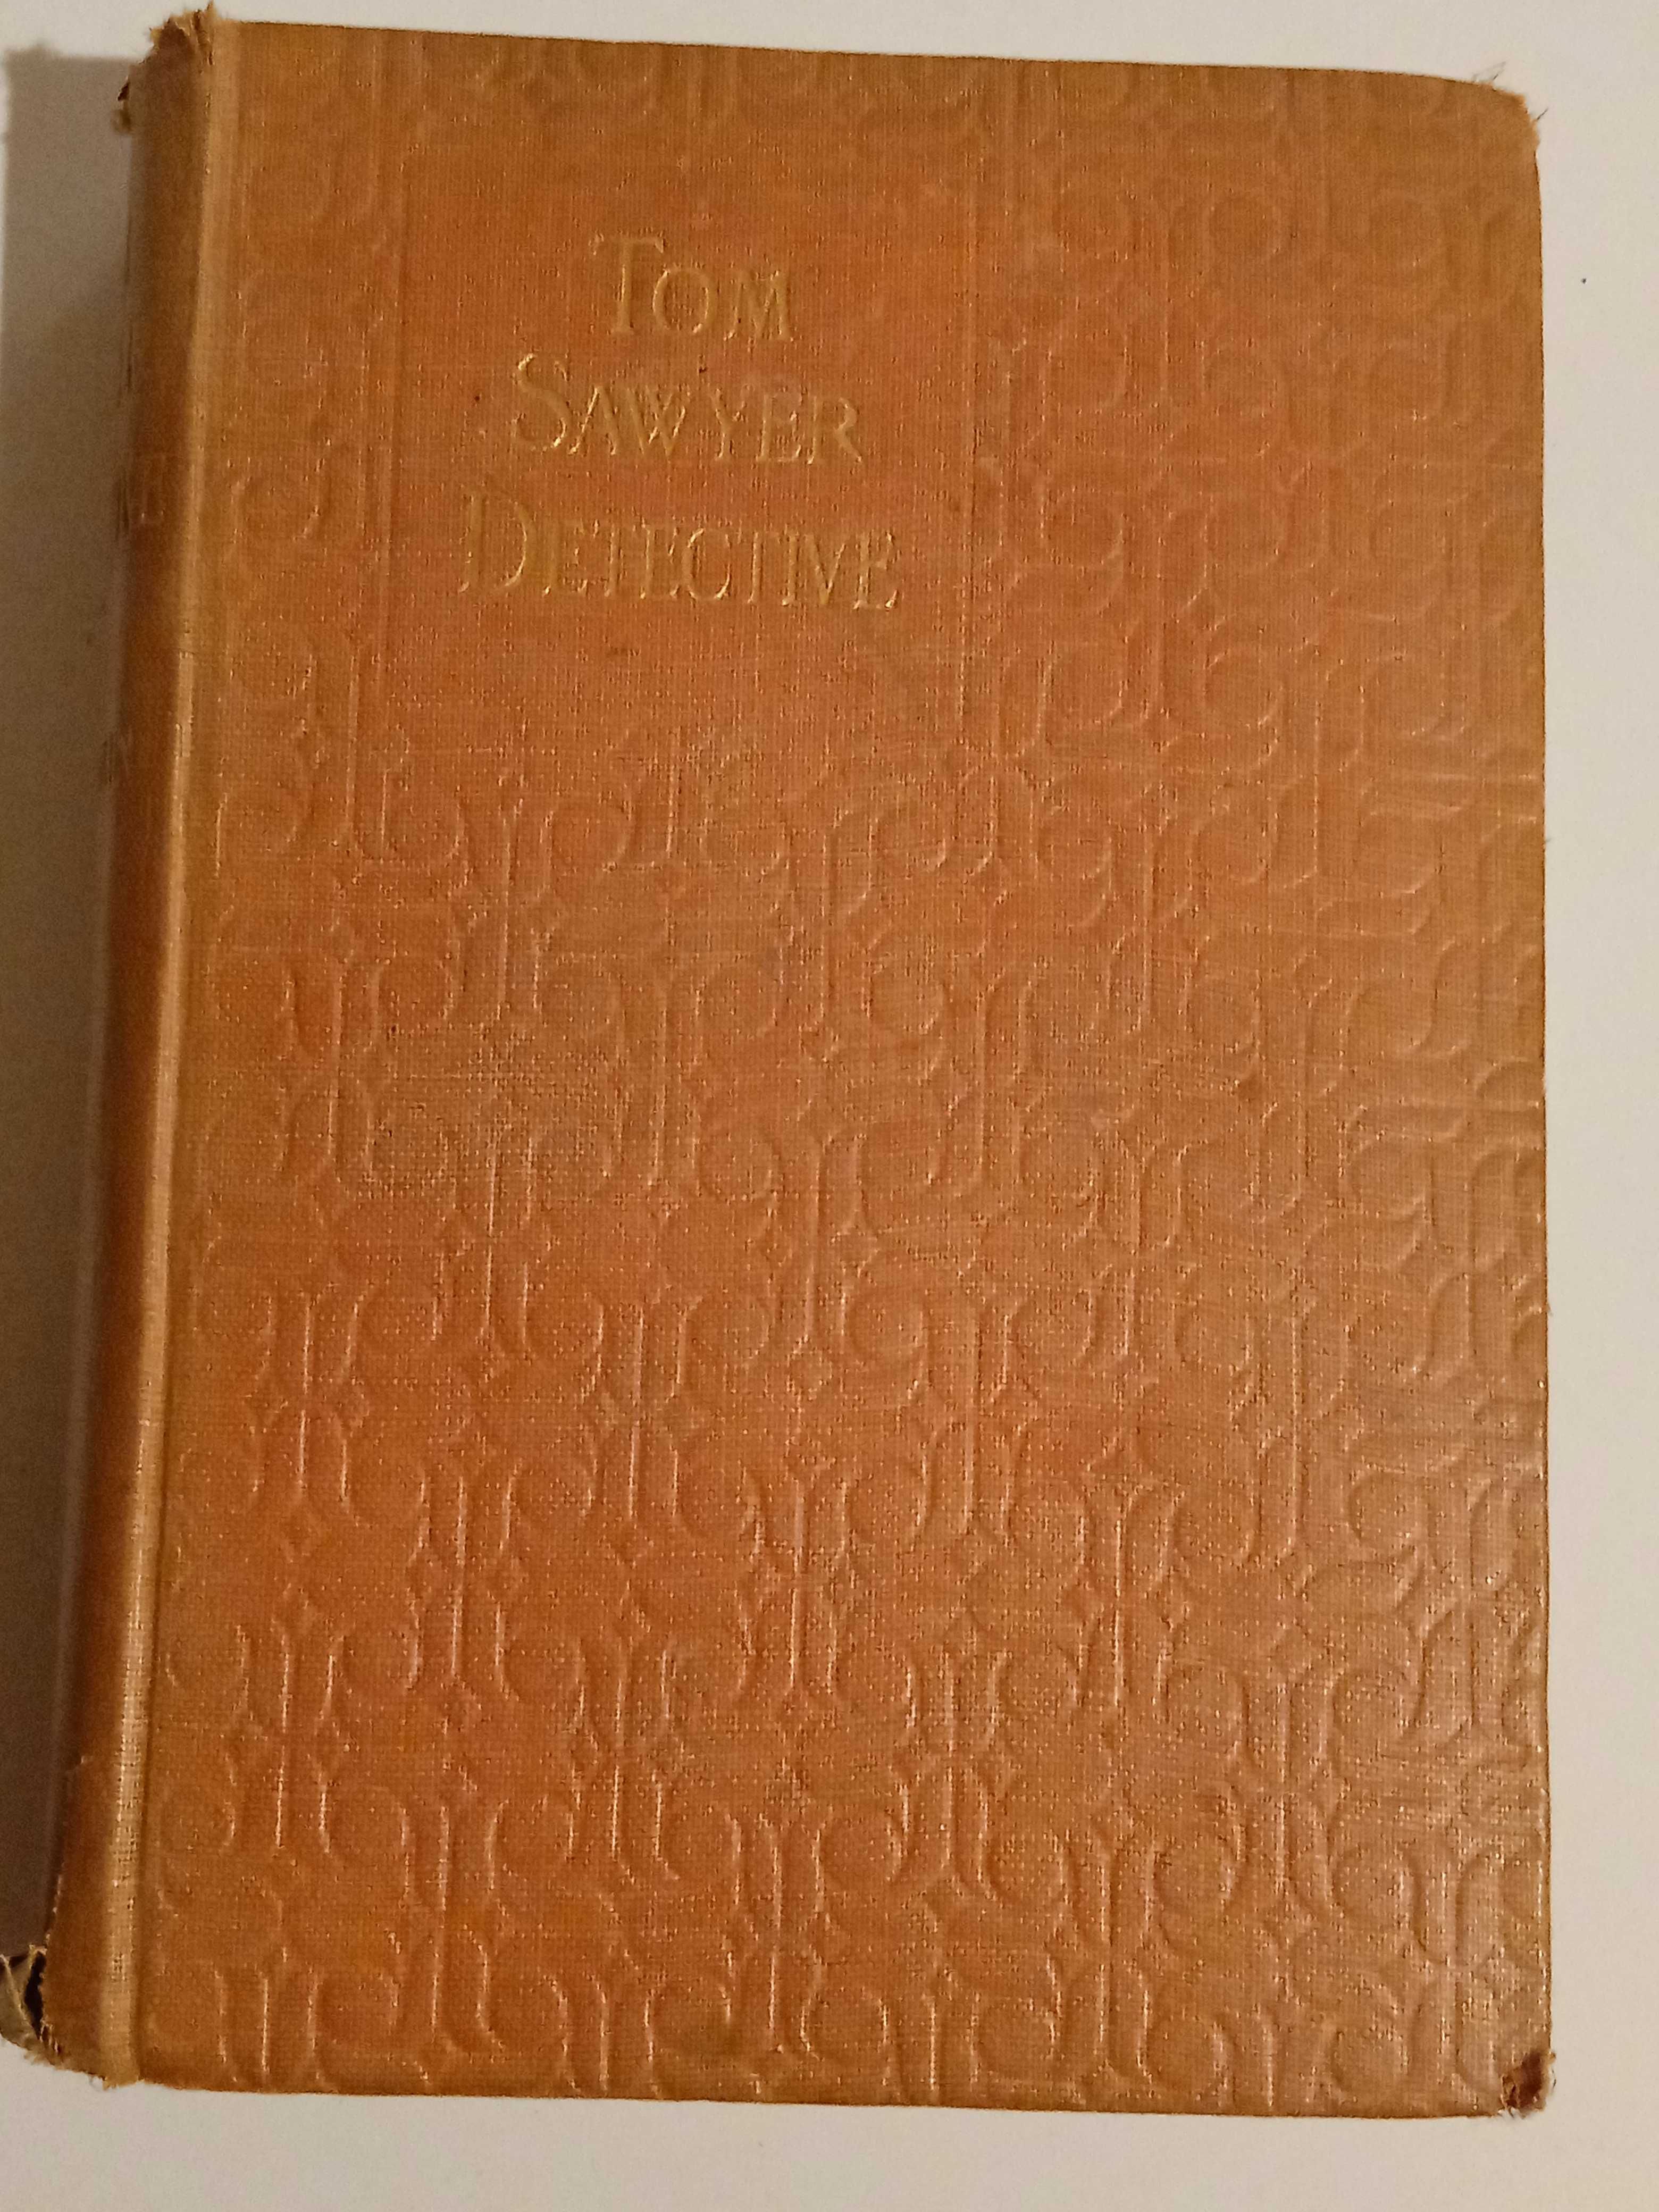 Antyczna książka Tom Sawyer:Detective,wydana w 1922 roku